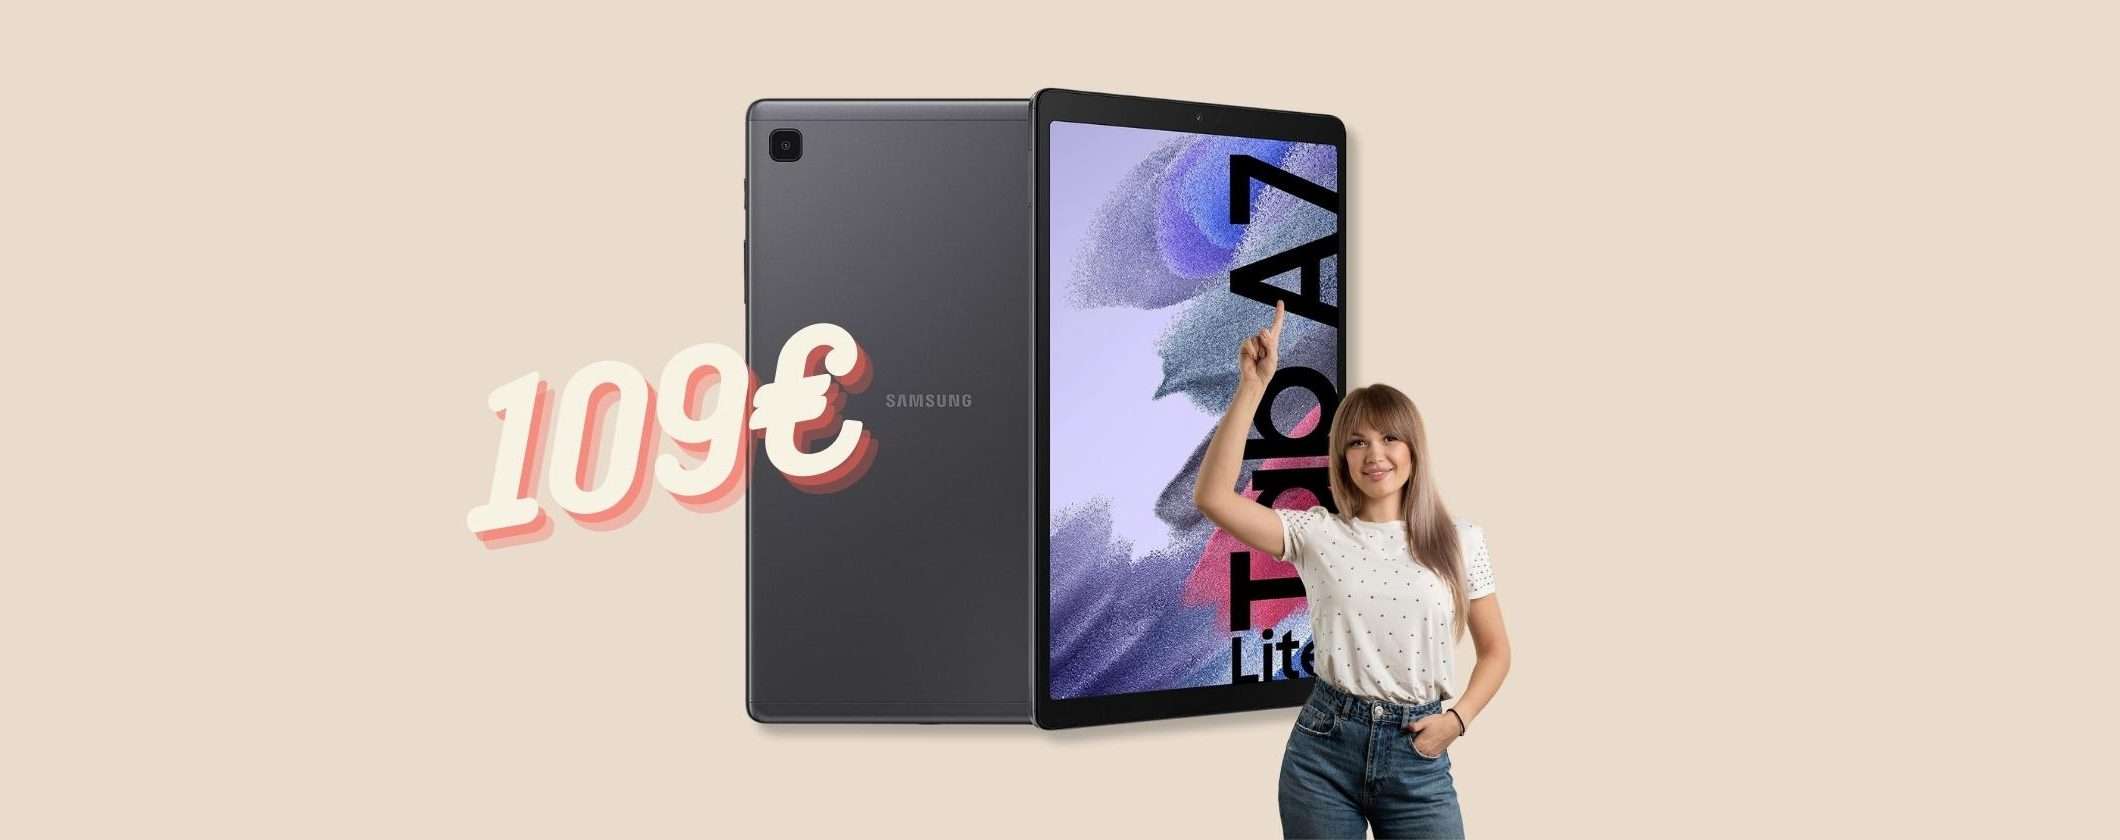 Samsung Galaxy Tab A7 Lite: solo 109€ per questo tablet